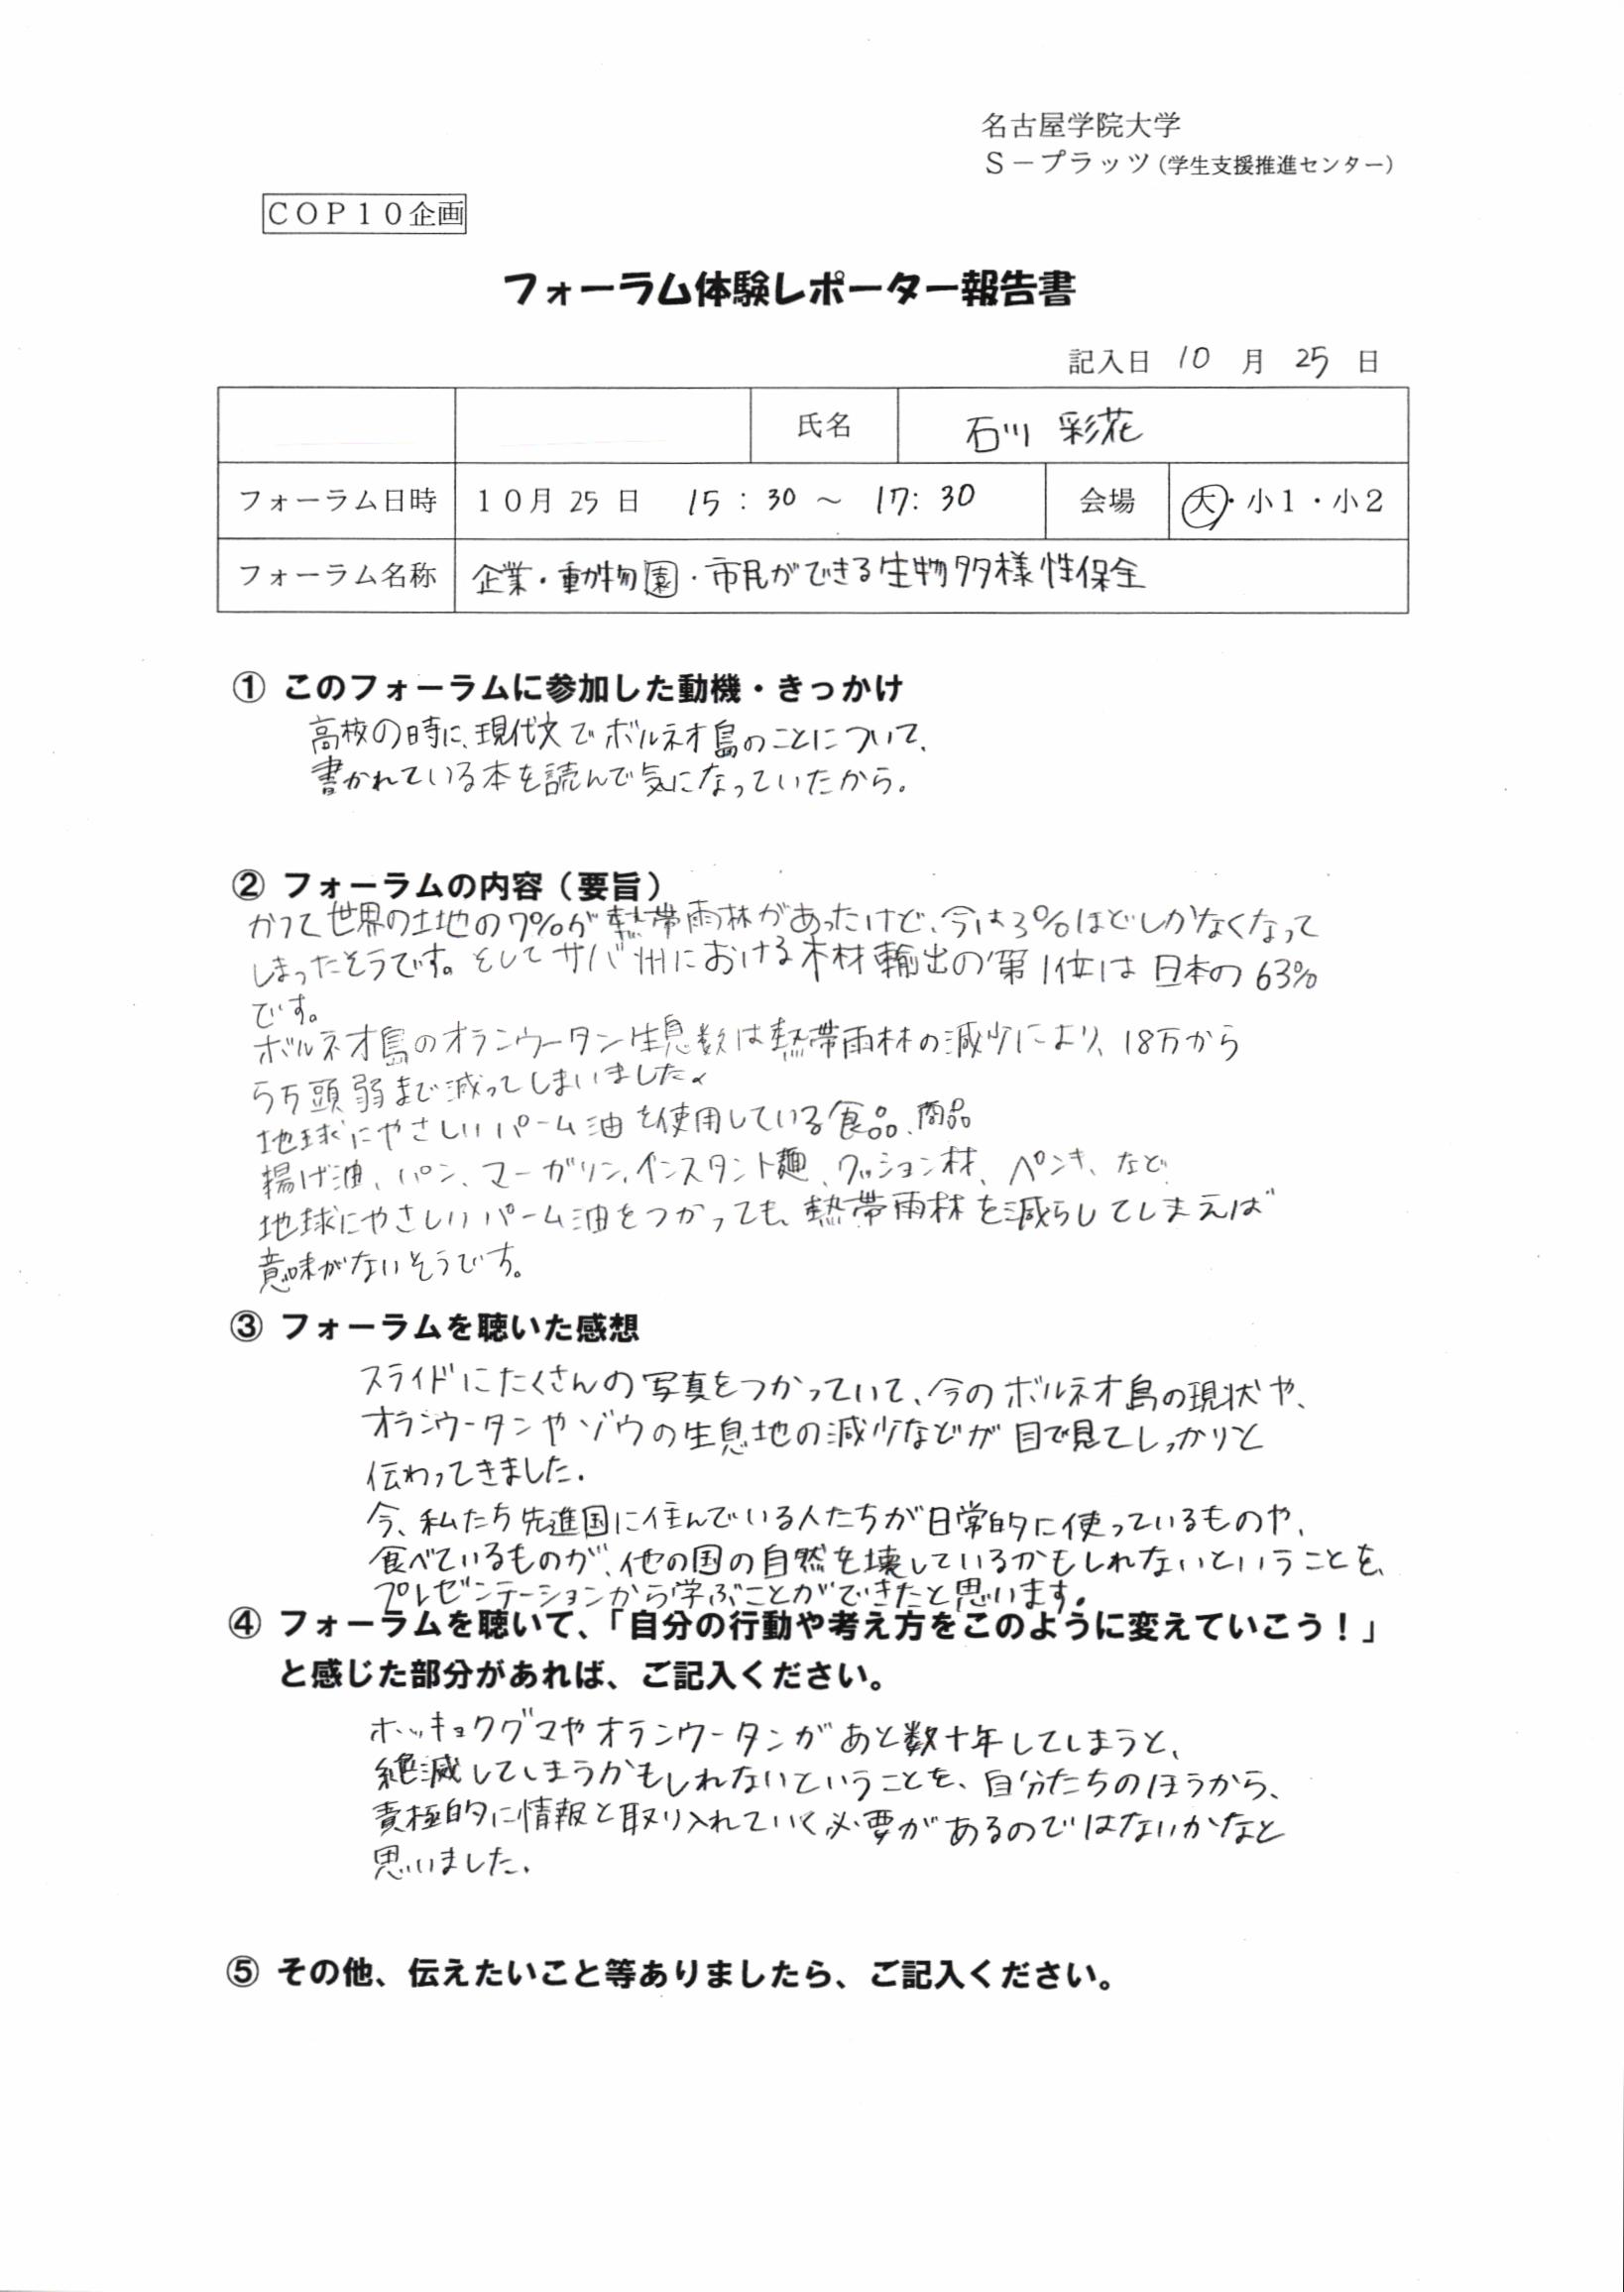 フォーラム体験レポーター報告石川